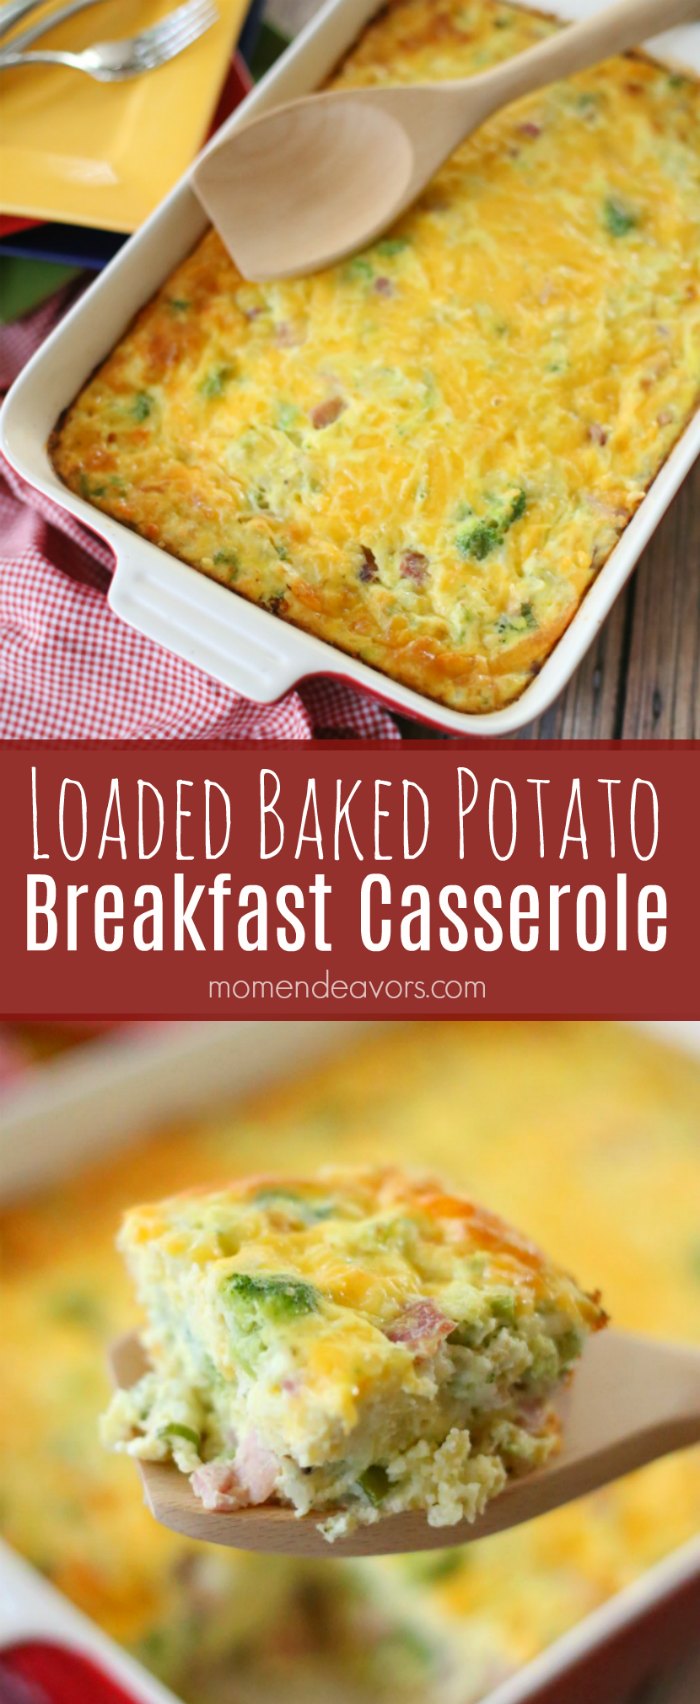 Loaded Baked Potato Breakfast Casserole